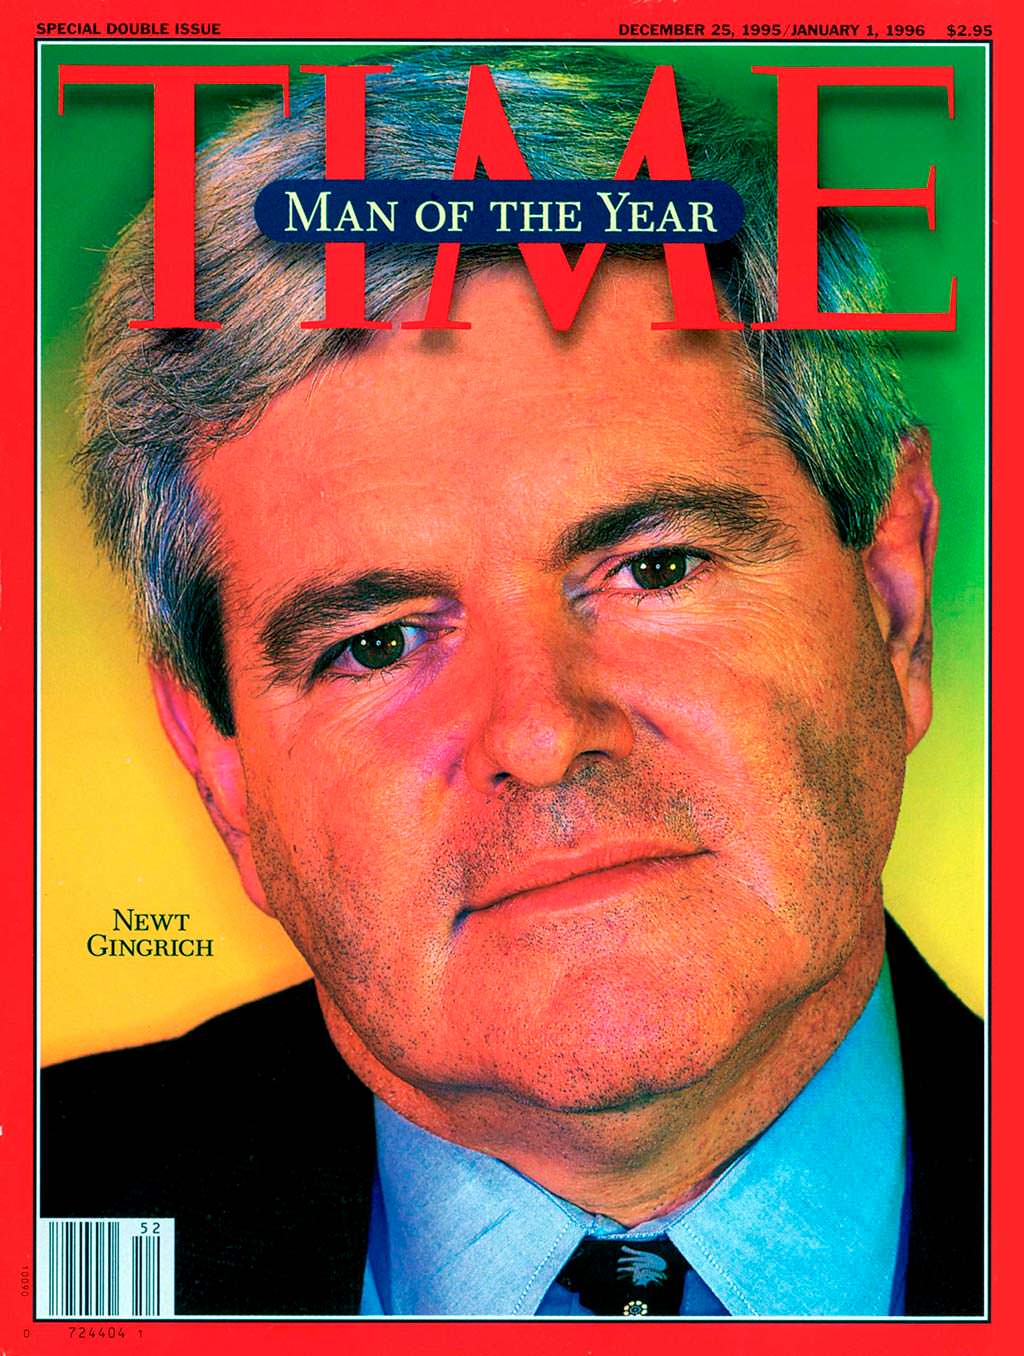 1995 год. Американский политик Ньют Гингрич на обложке Time